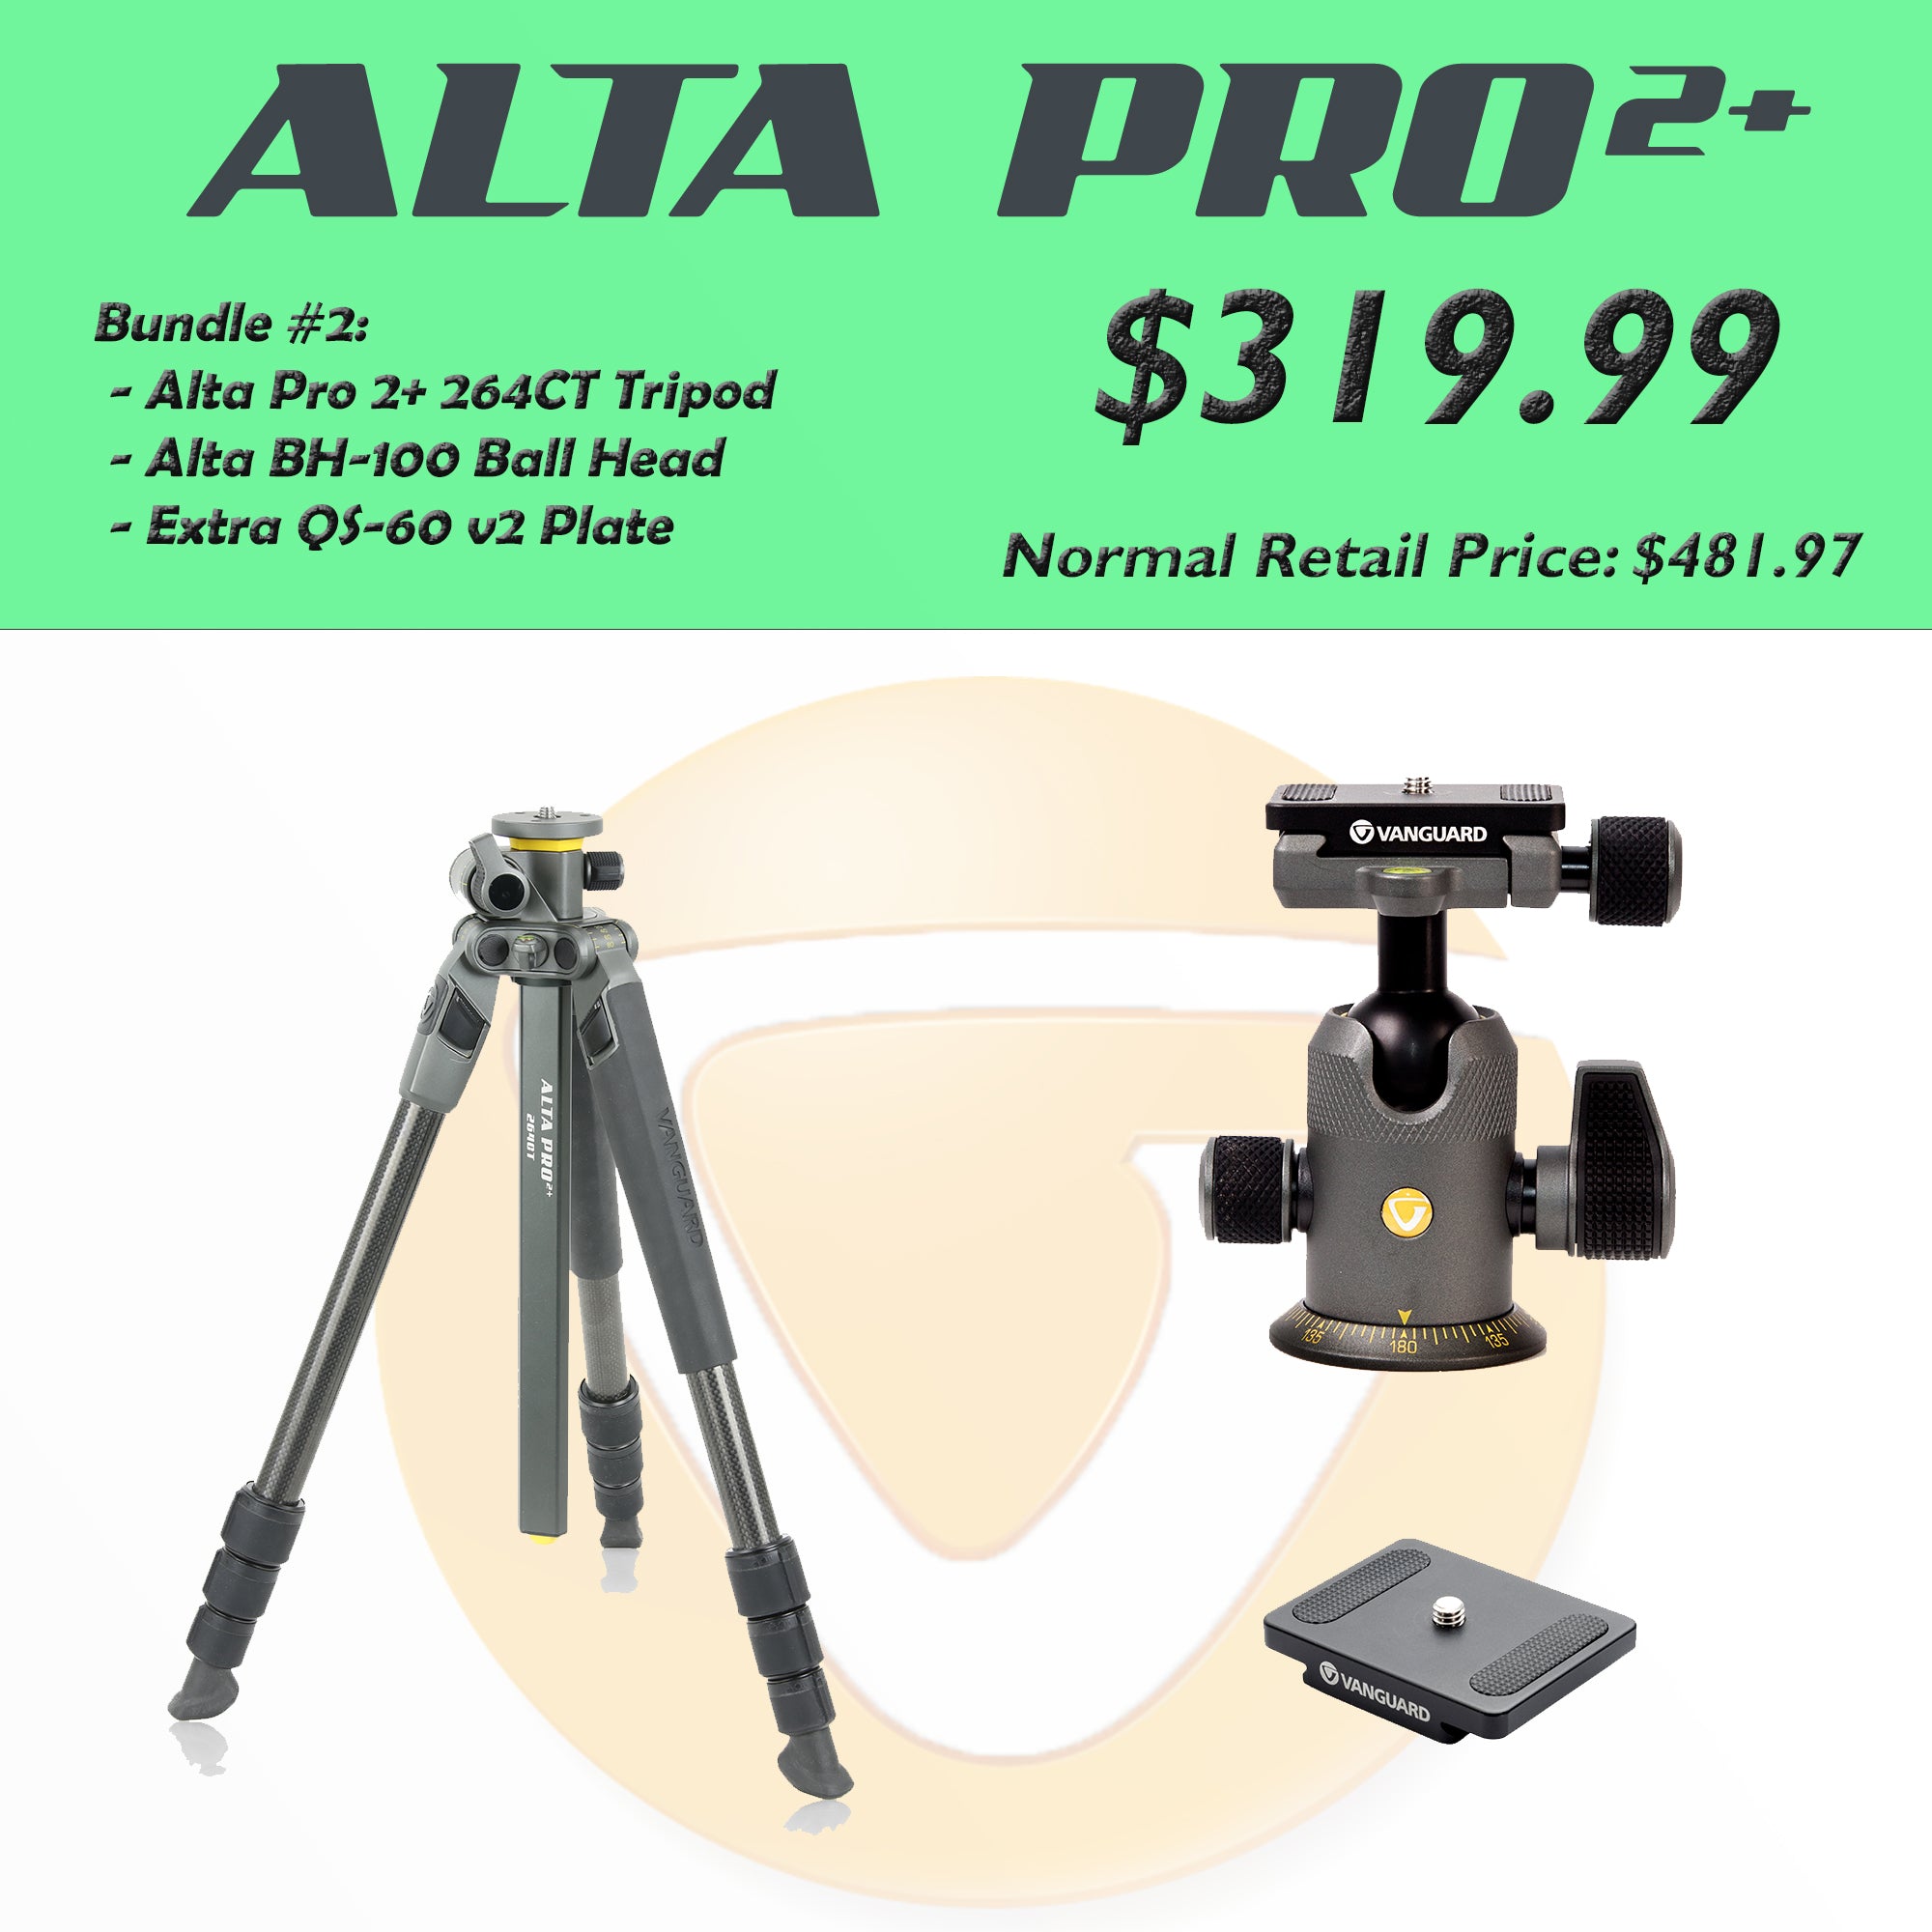 Alta Pro 2+ Bundle #2: - Alta Pro 2+ 264CT Tripod, Alta BH-100 Ball Head,  Extra QS-60 v2